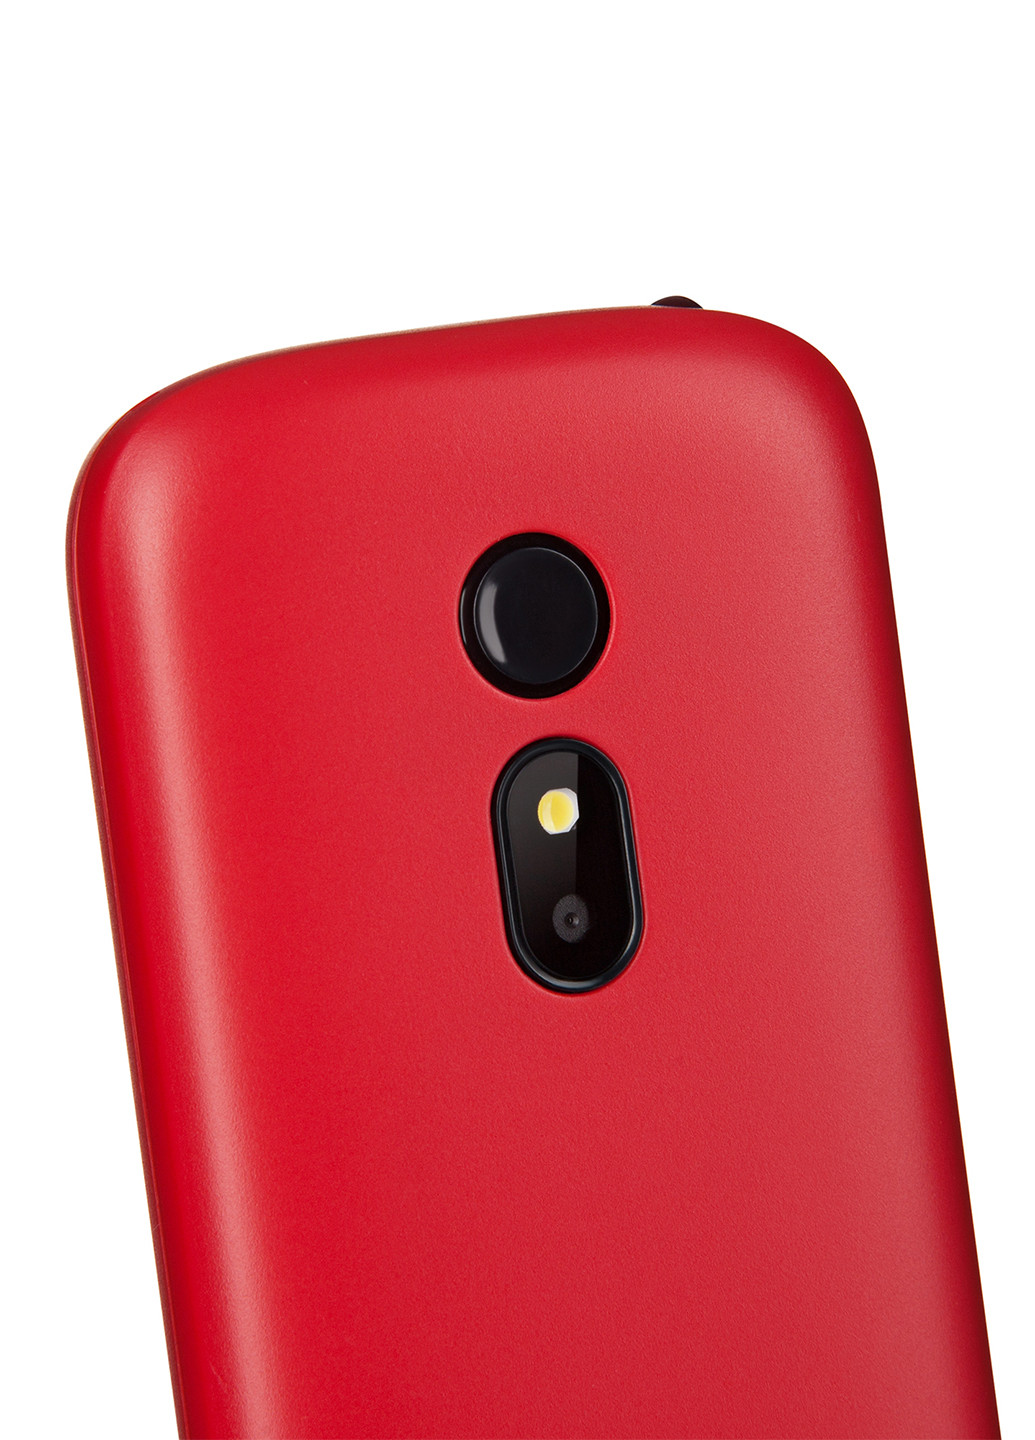 Мобильный телефон E240 2019 DUALSIM Red 2E 2E E240 2019 DUALSIM Red красный